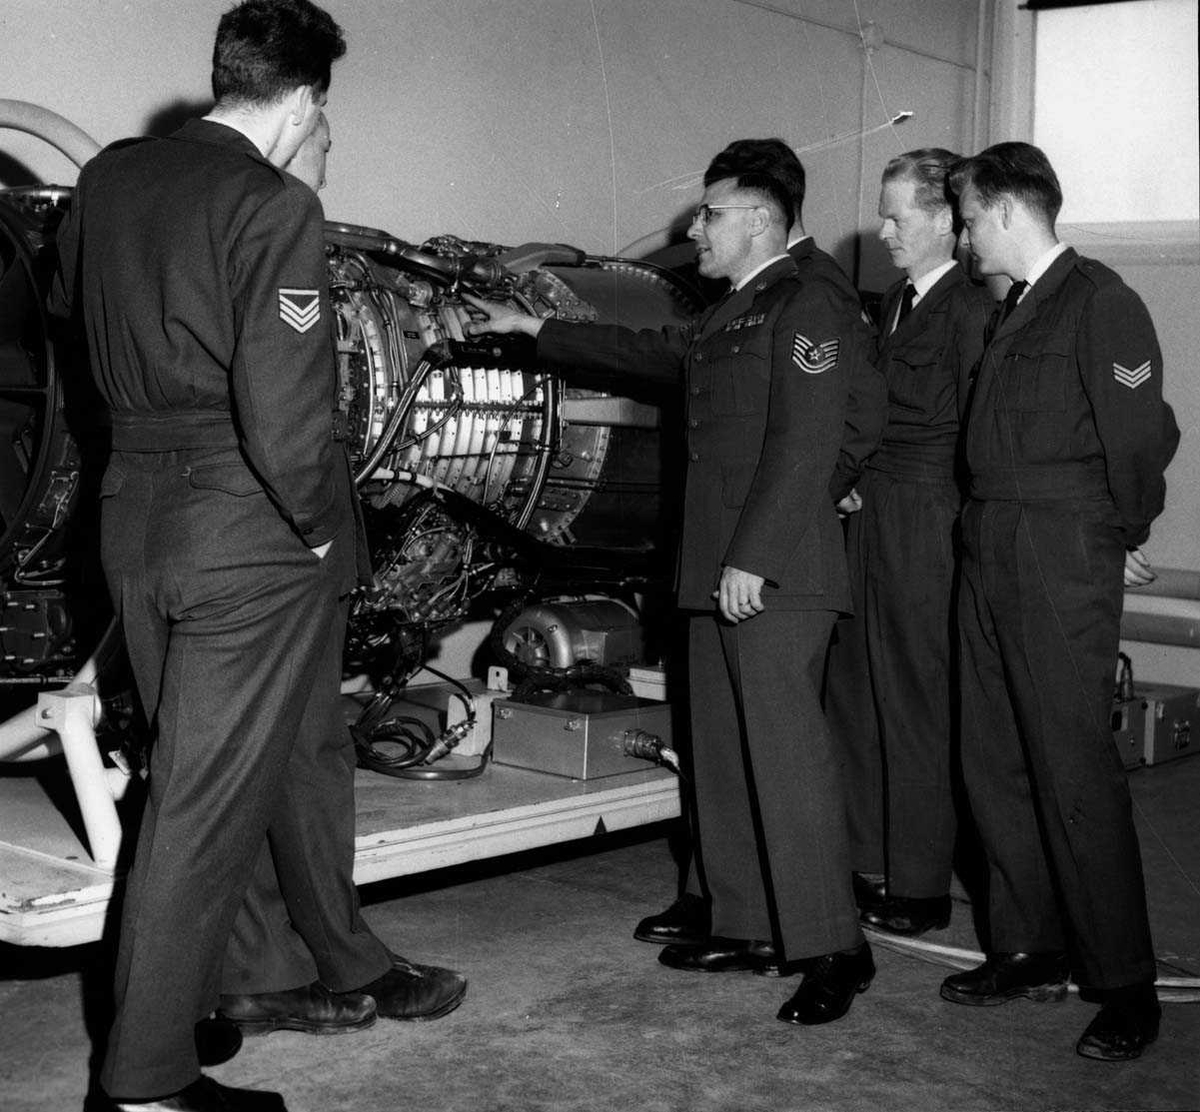 Gruppe.  Seks personer i uniform ved siden av en jetmotor.